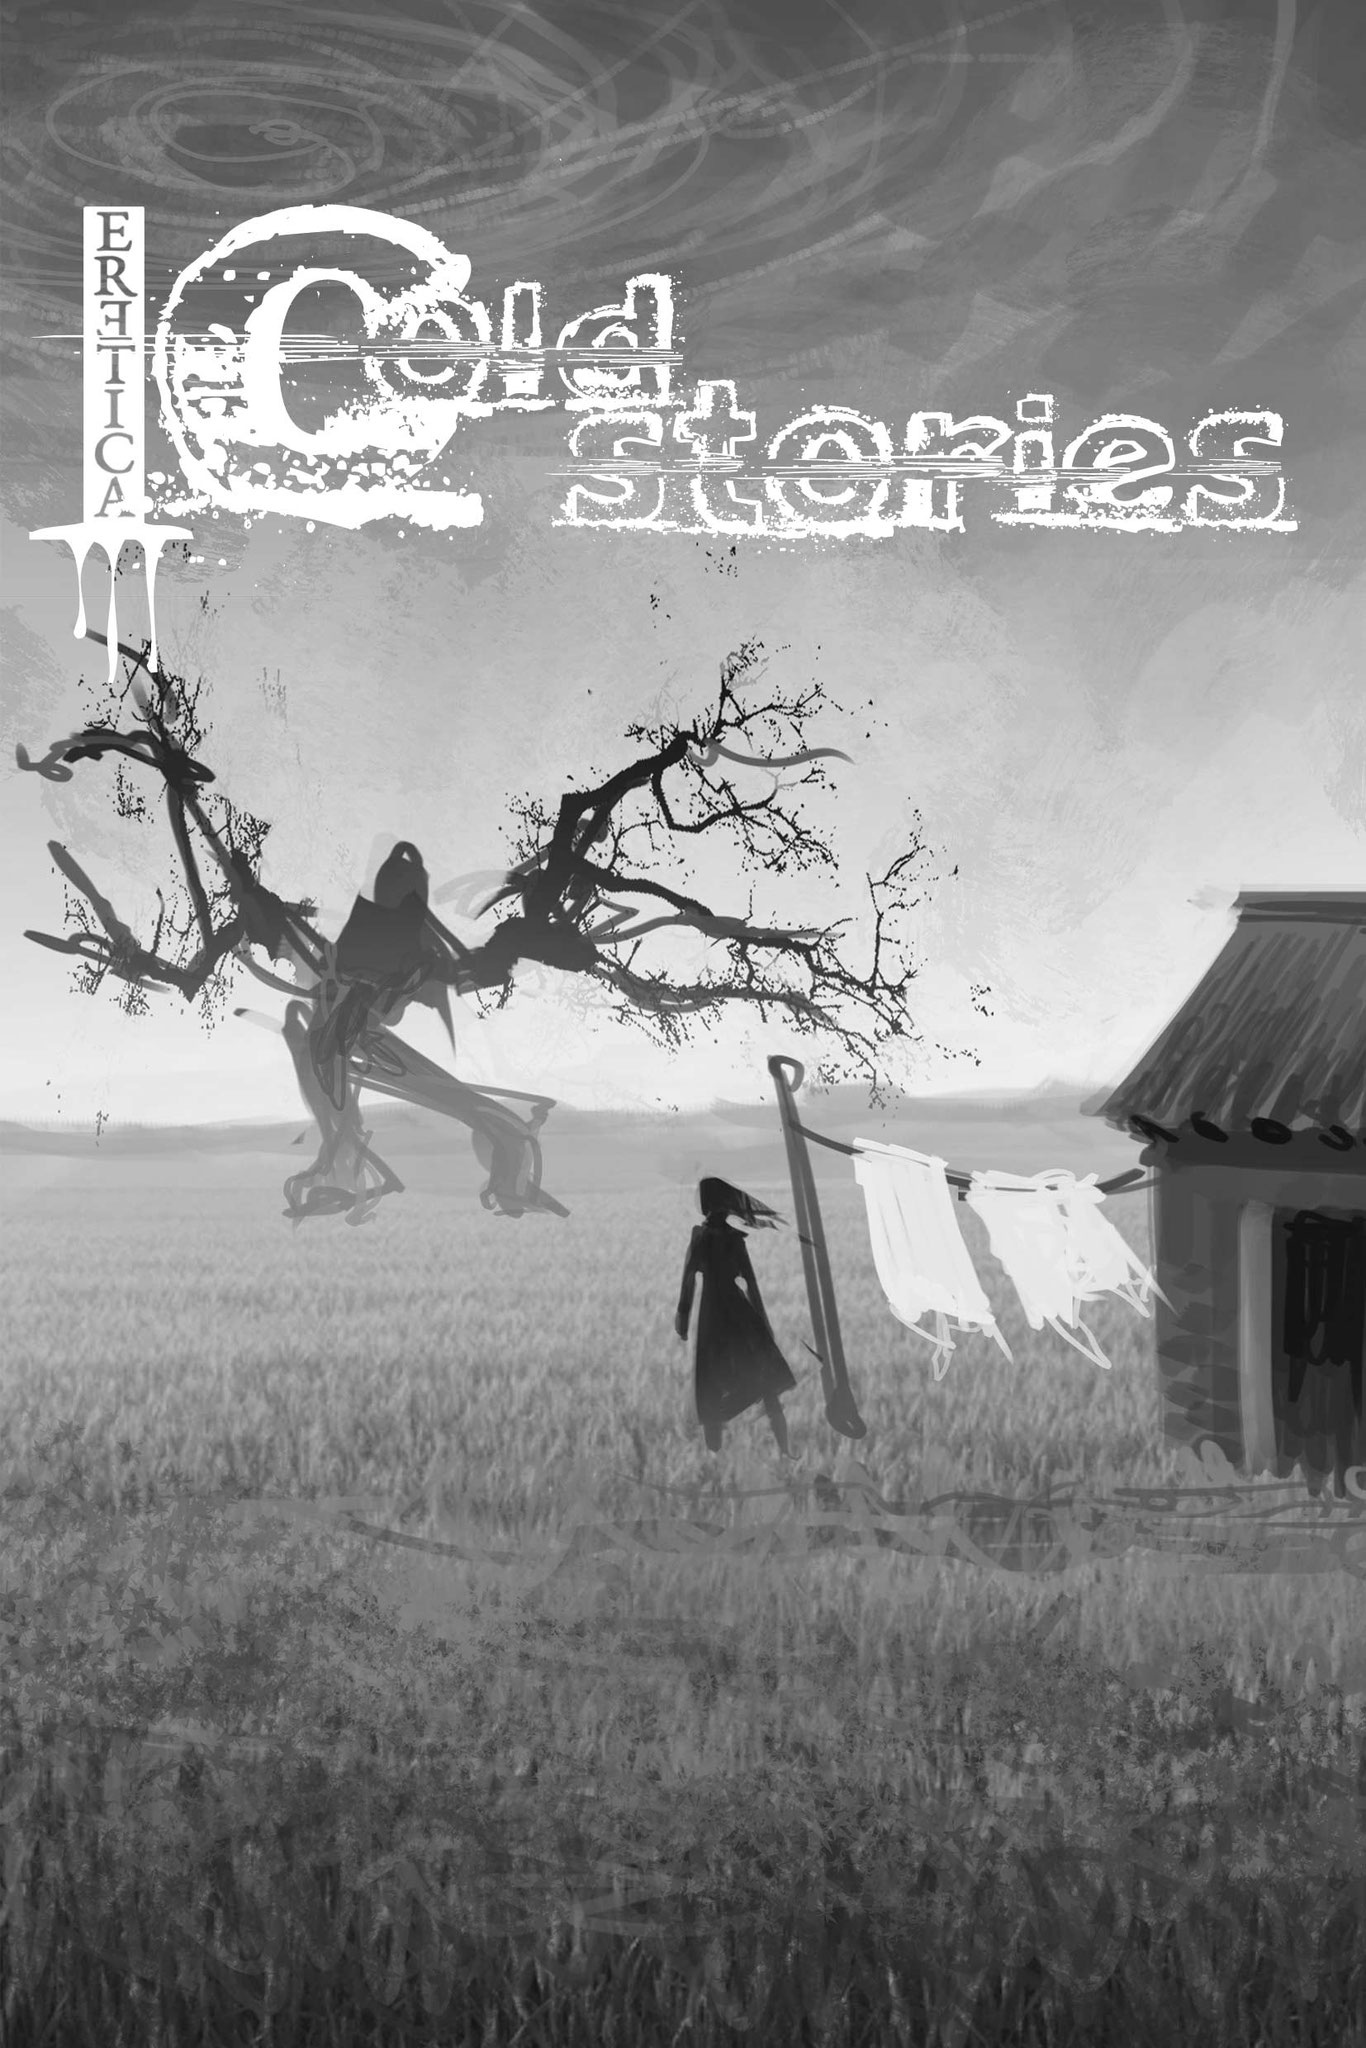 Cold Stories (Eretica Edizioni) - 2020